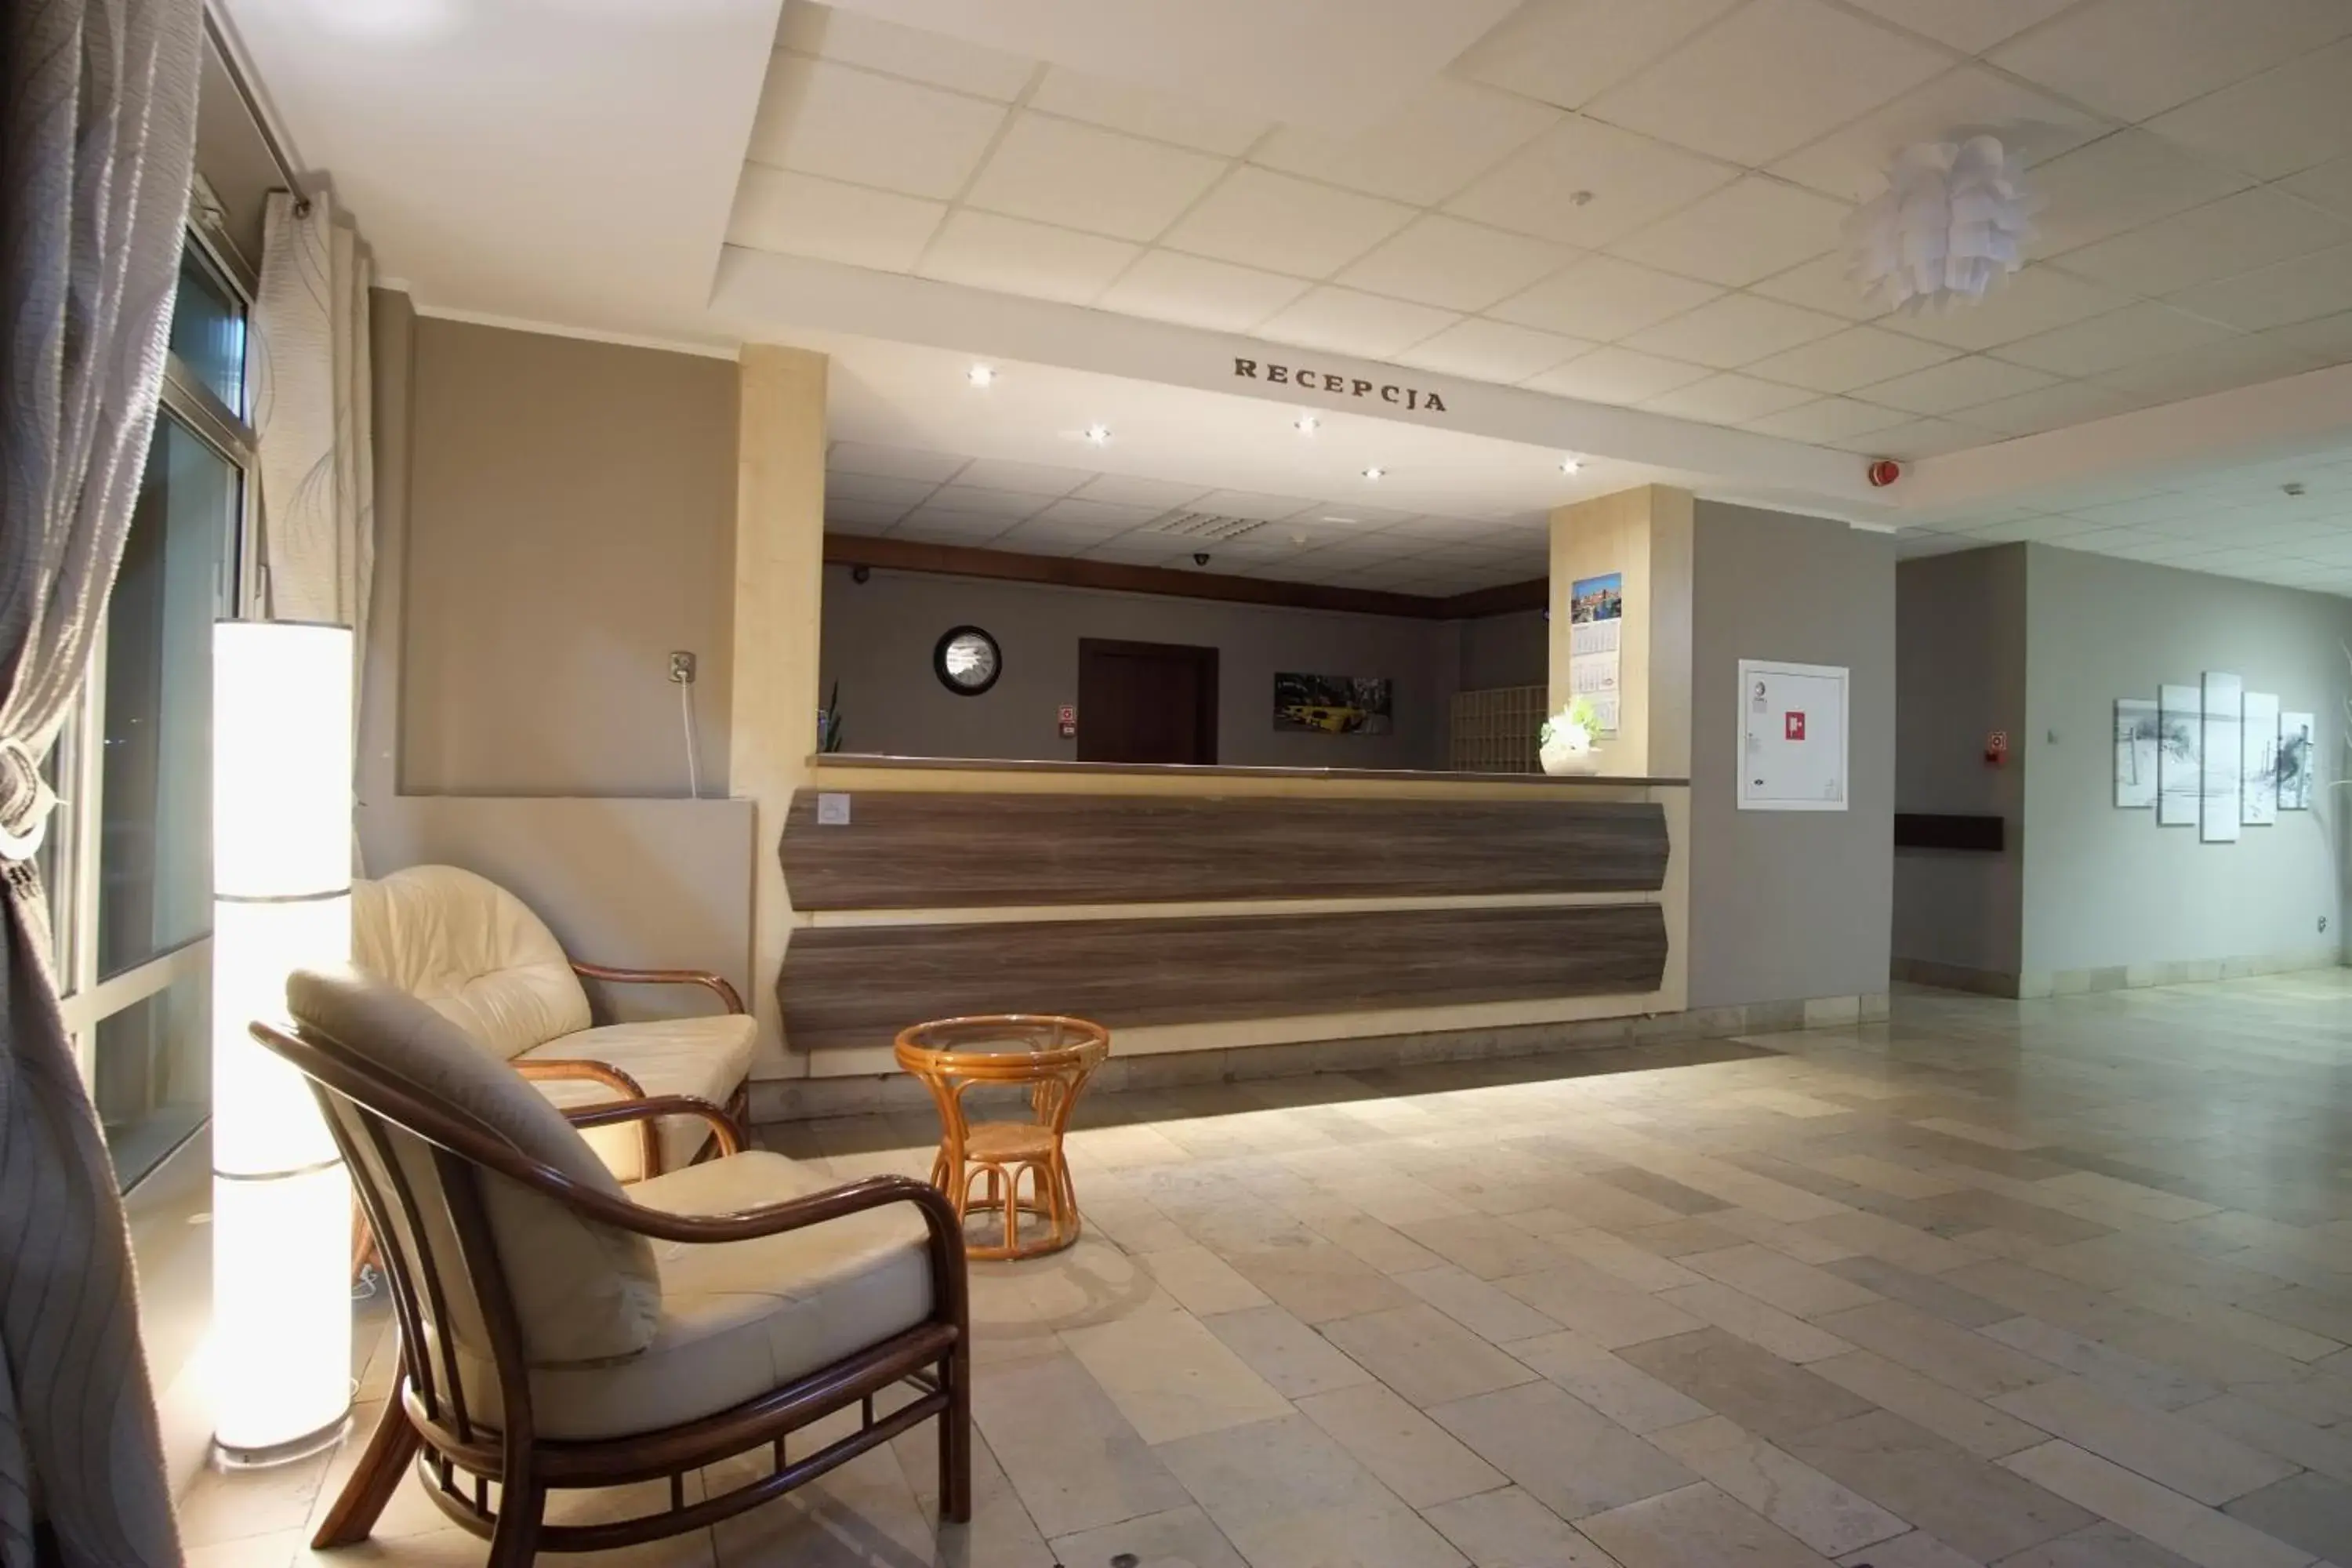 Lobby or reception, Lobby/Reception in Hotel Miramar